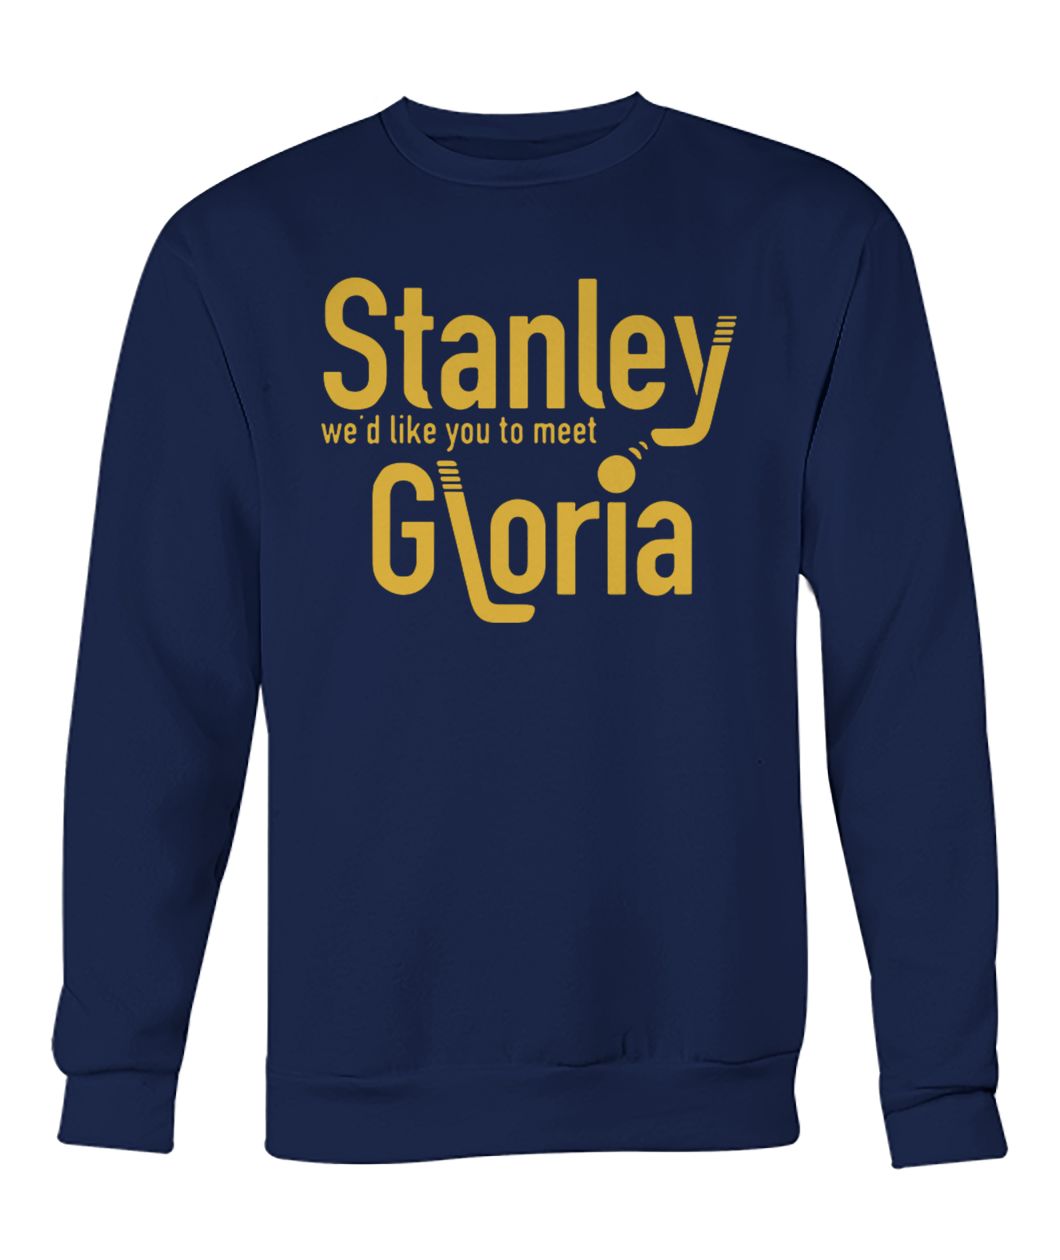 Stanley we'd like you to meet gloria crew neck sweatshirt